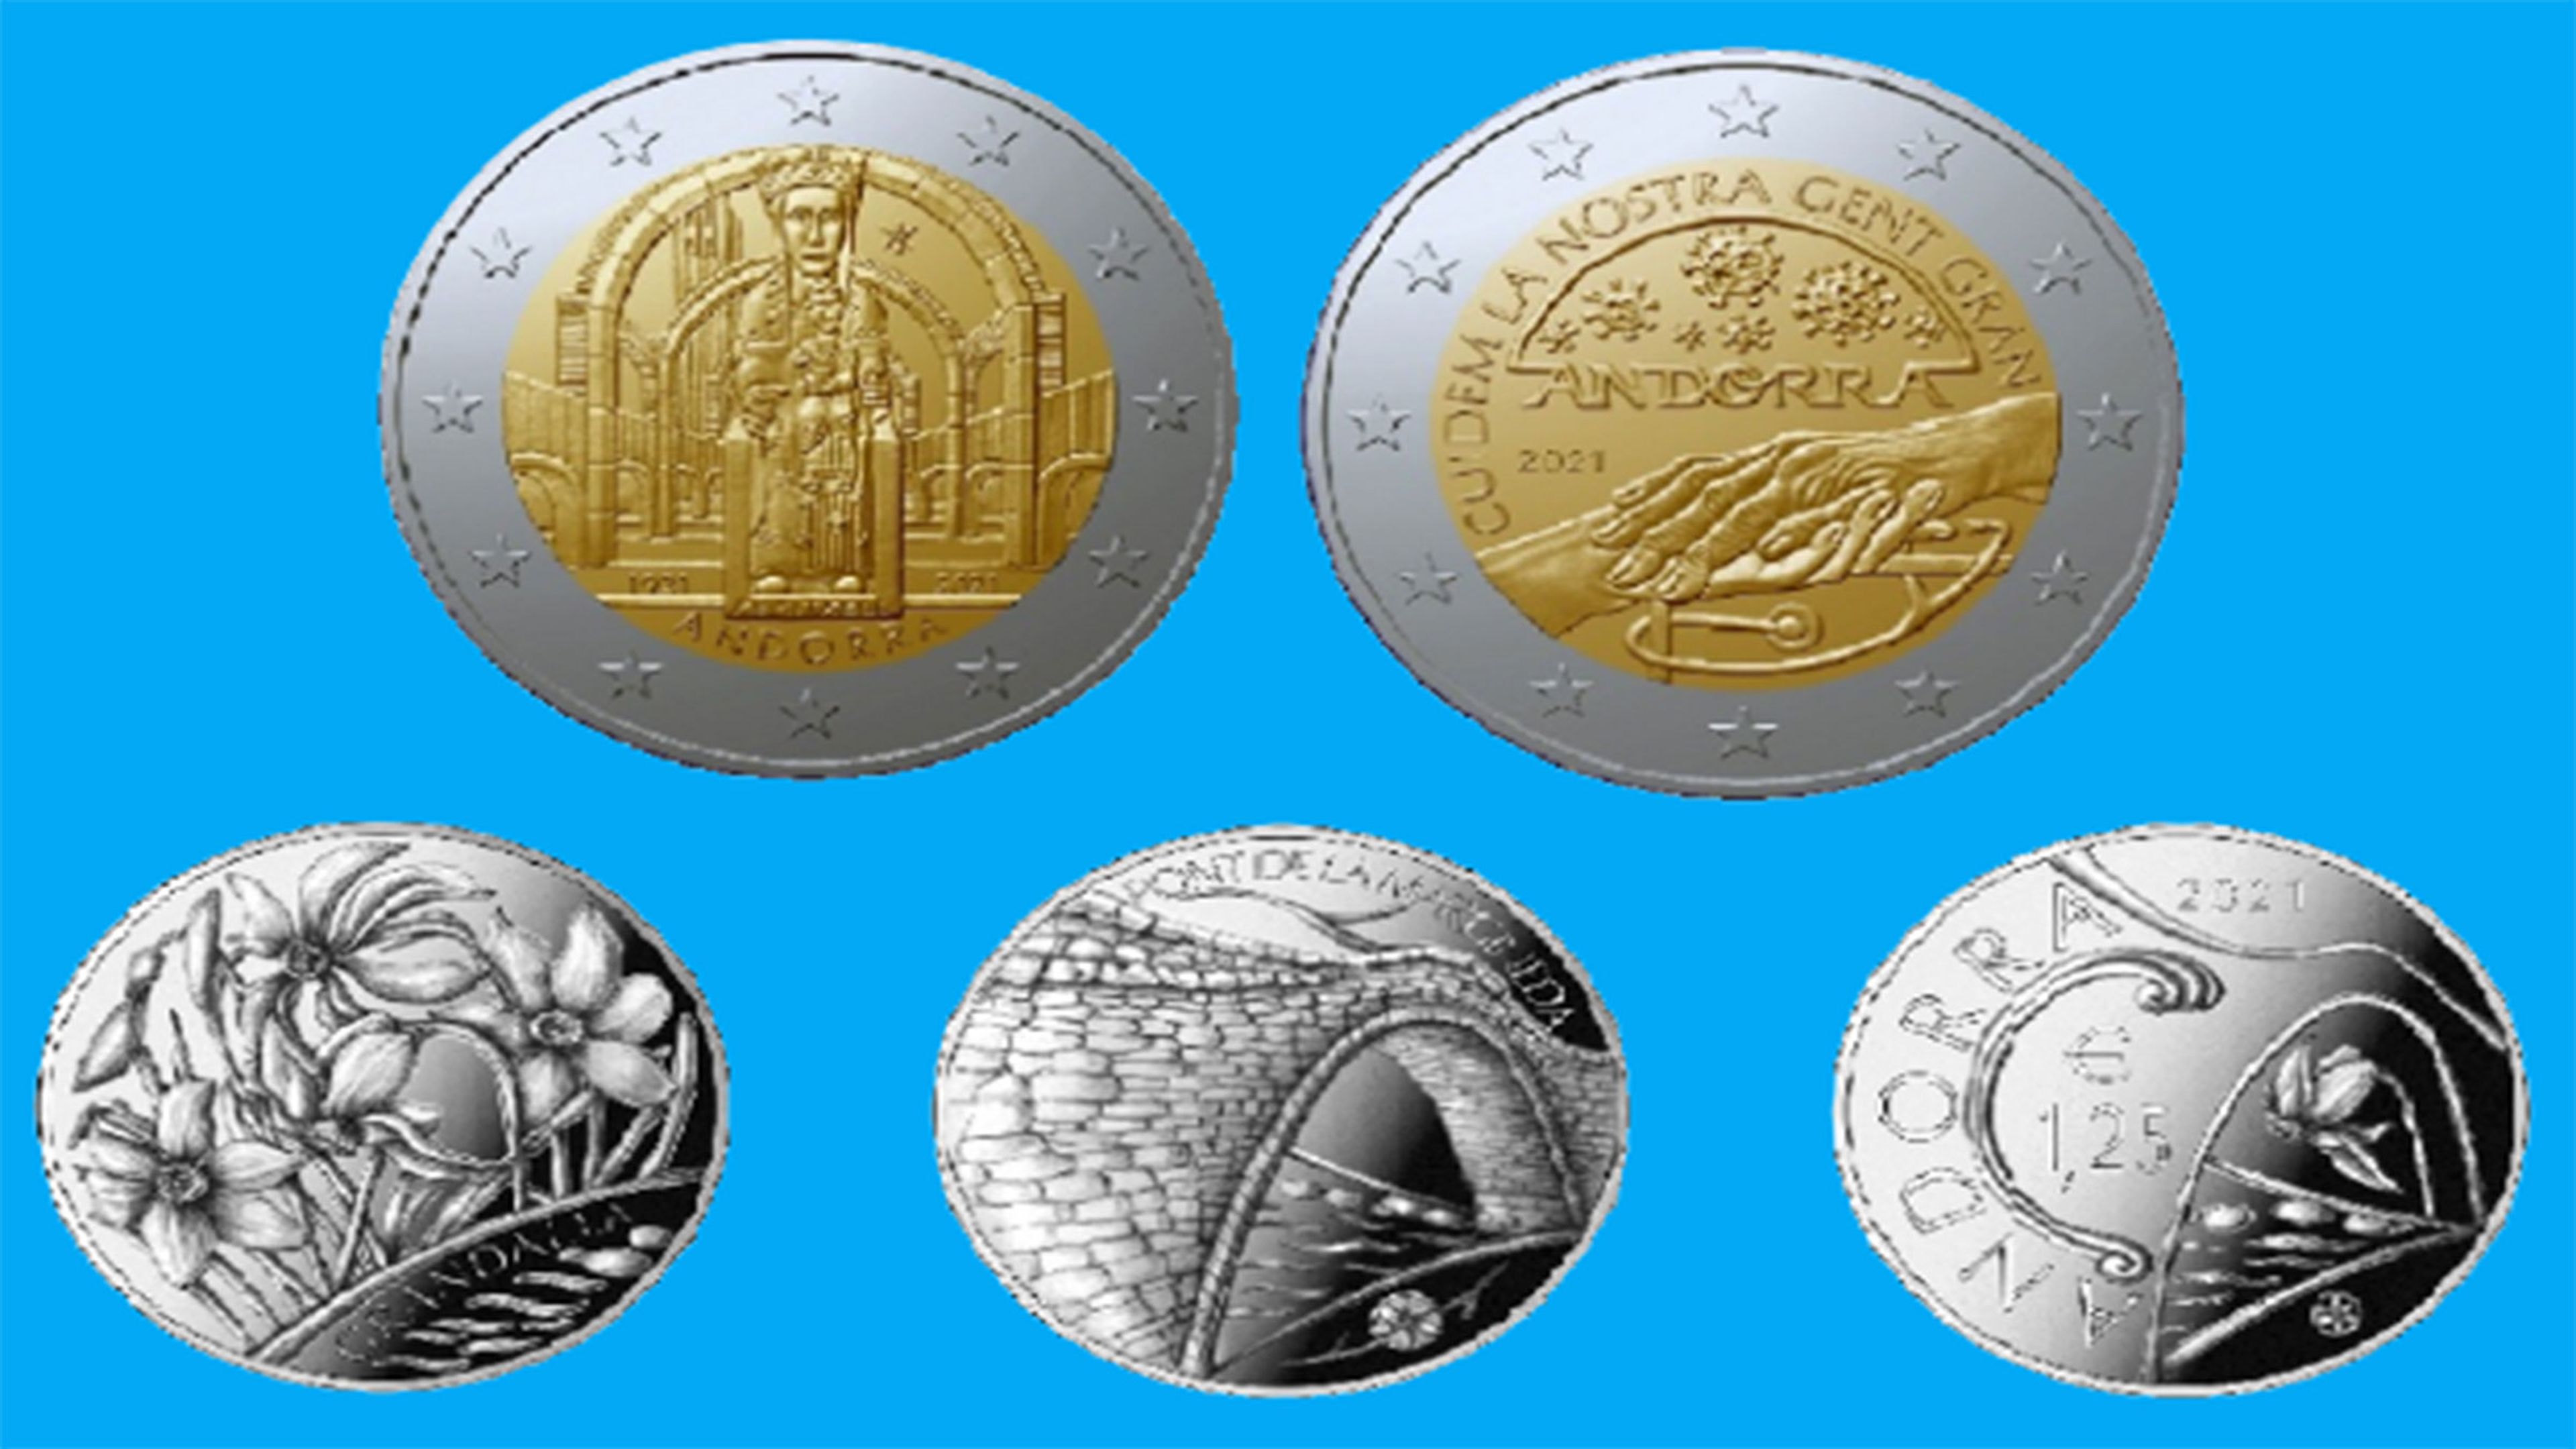 Nuevas monedas Andorra